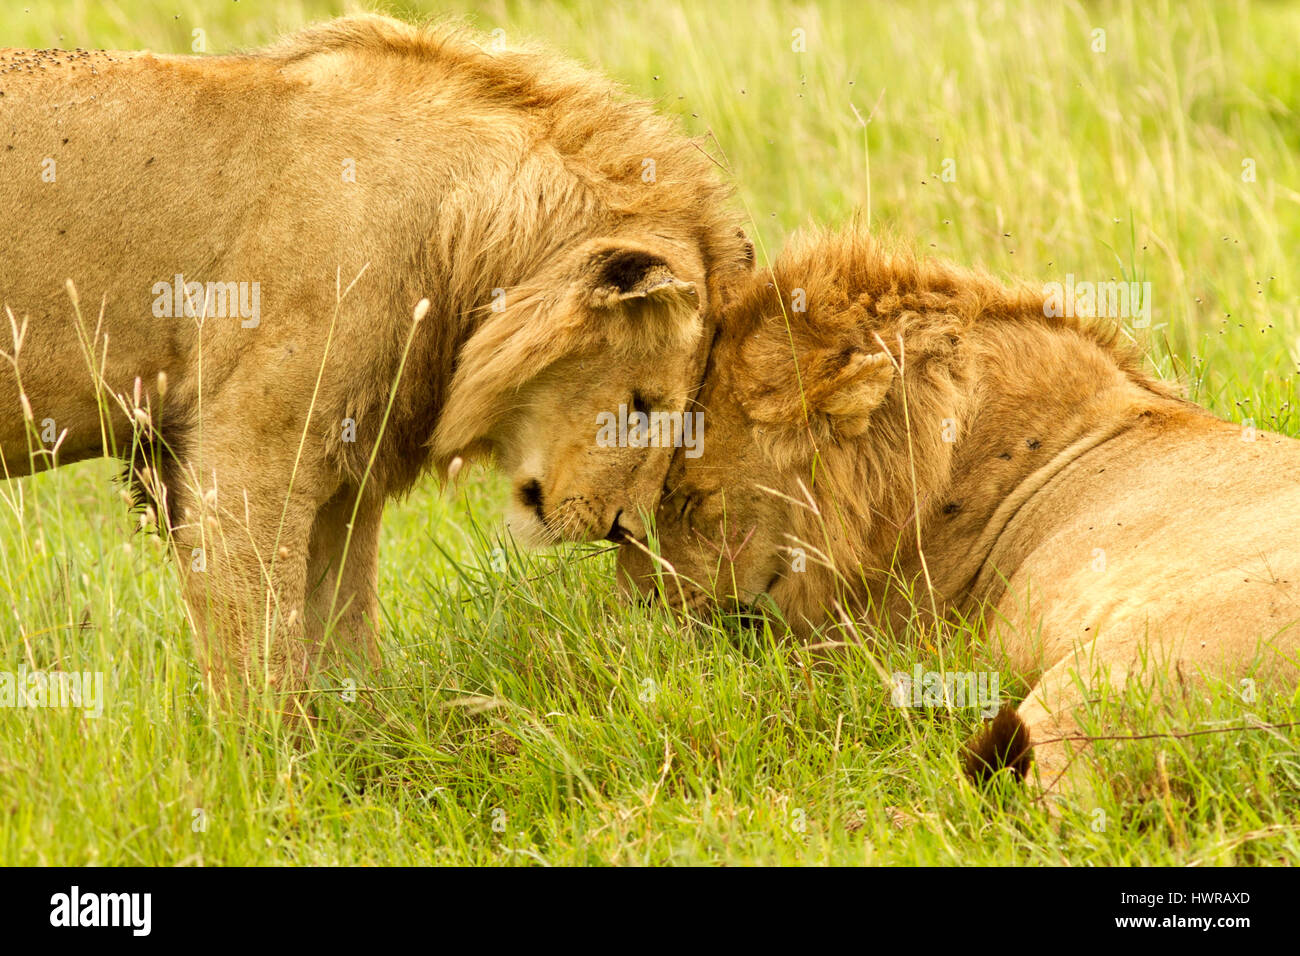 L'affection entre les lions Banque D'Images